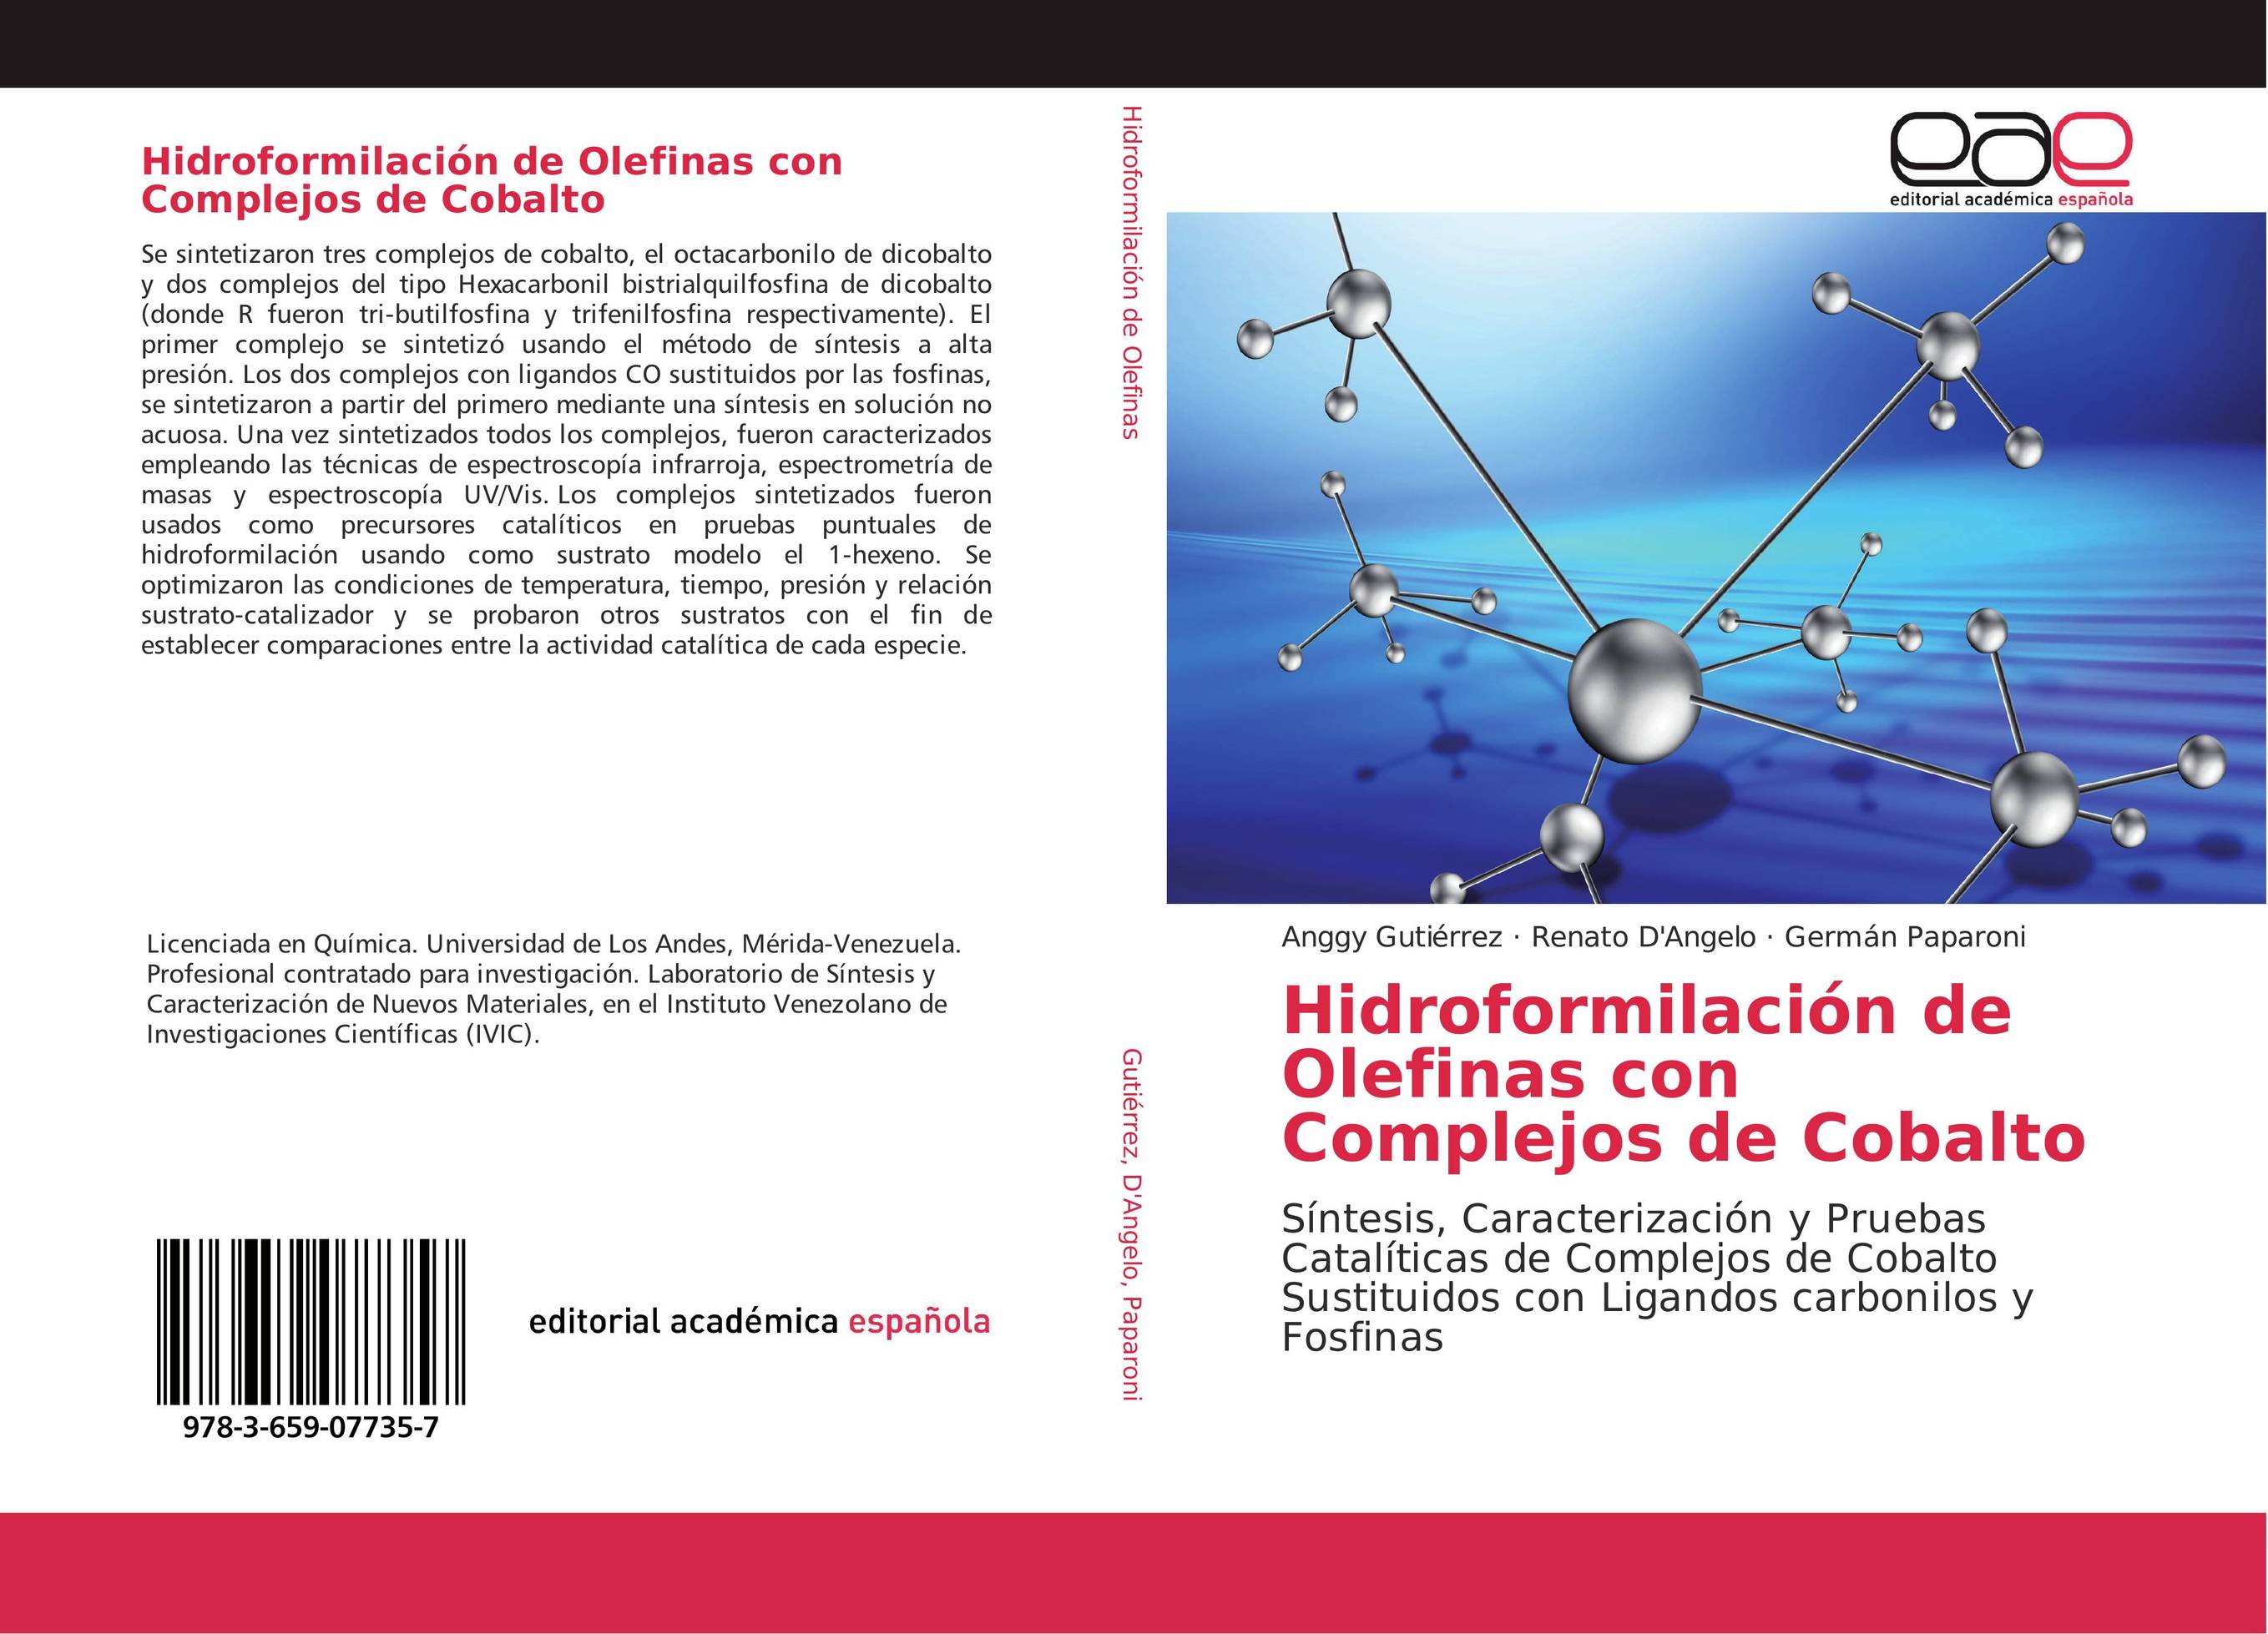 Hidroformilación de Olefinas con Complejos de Cobalto